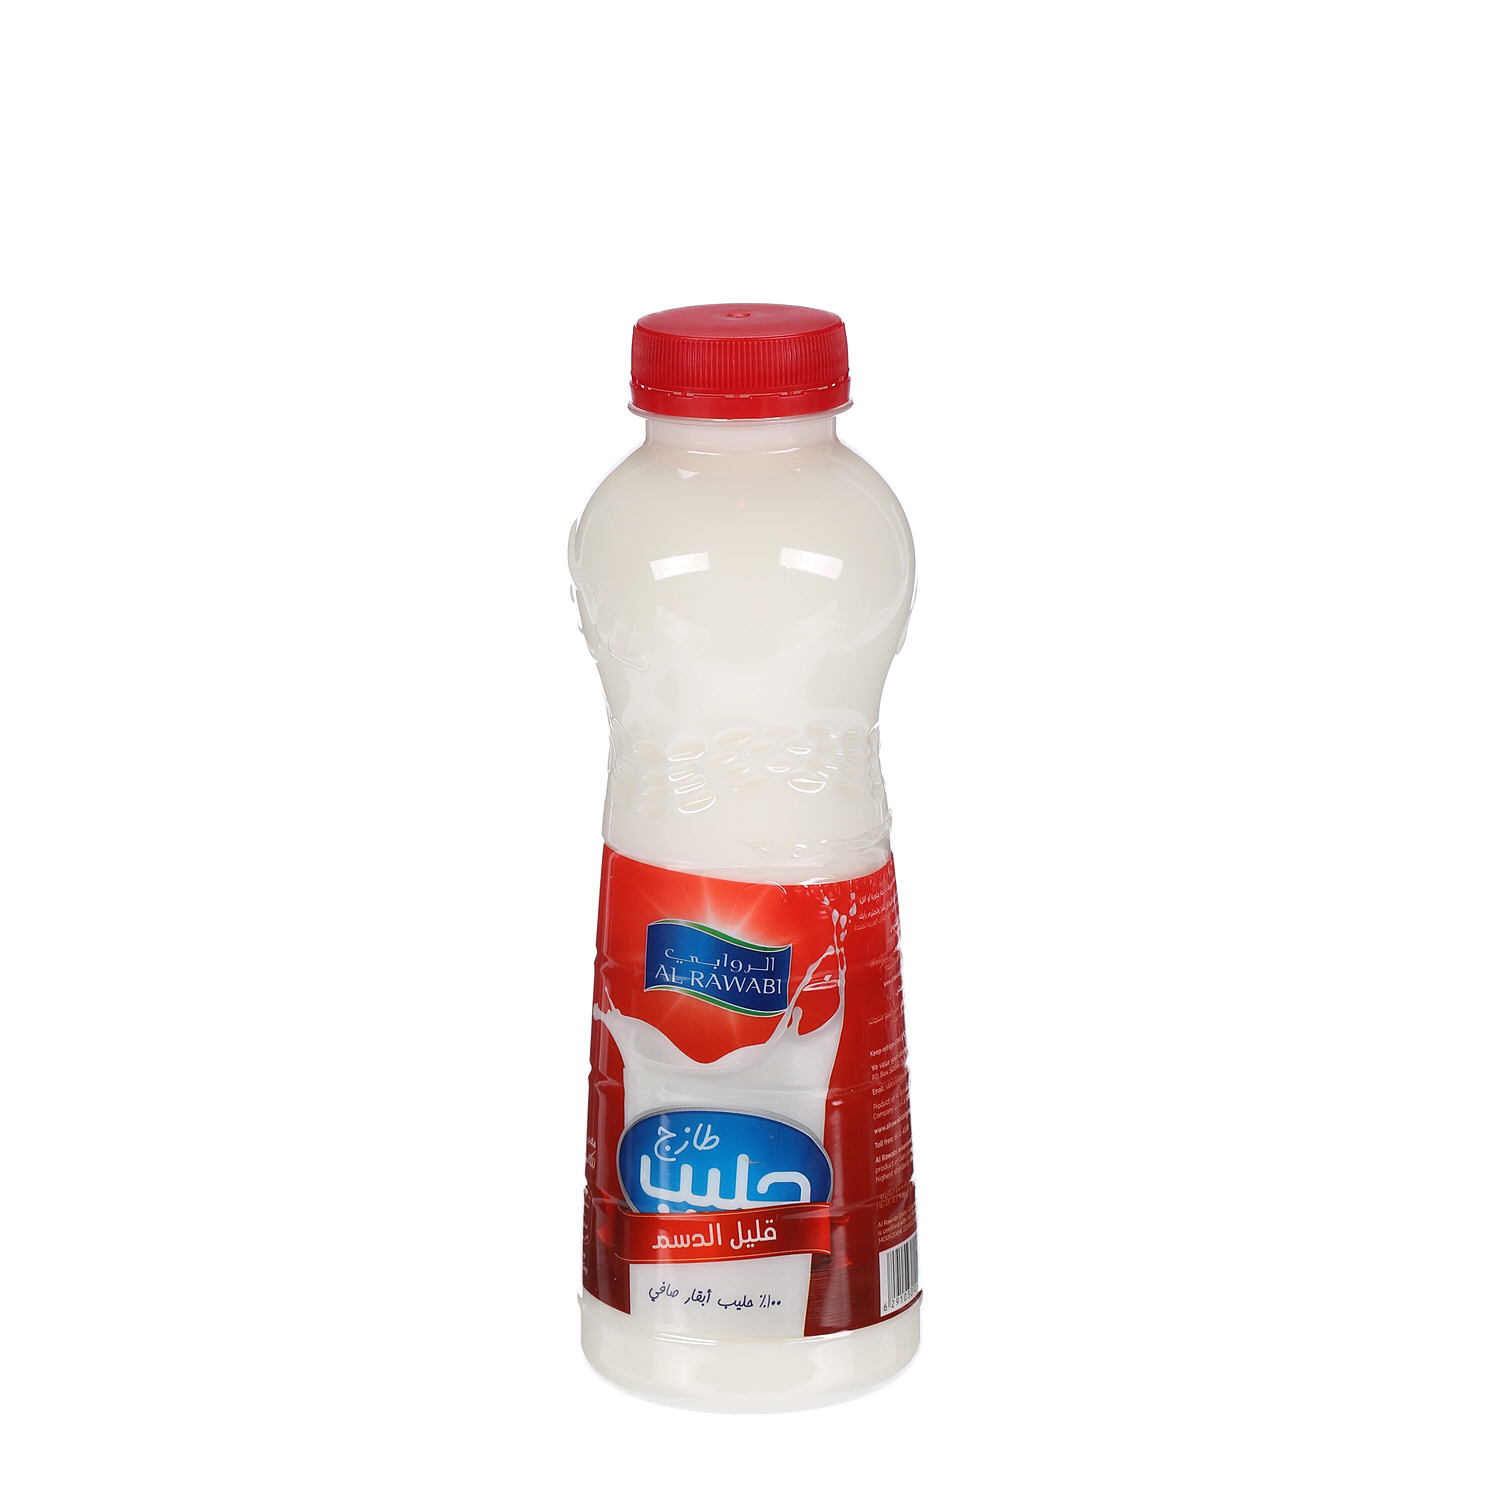 Al Rawabi Fresh Milk Low Fat 500ml